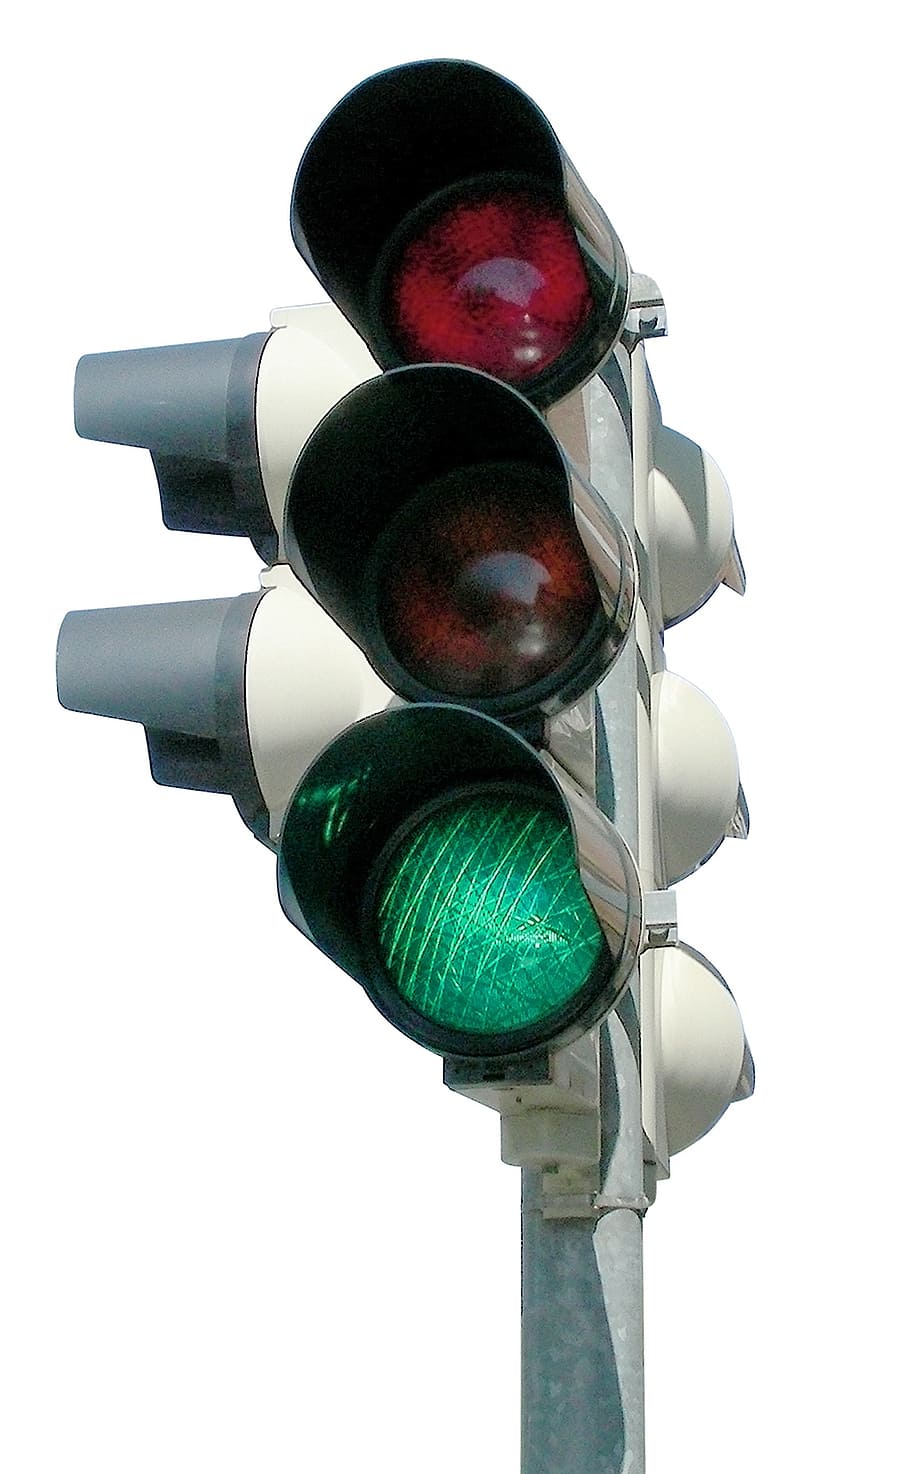 信号機, 緑, 信号機信号, ライト, 交通, 行く, 道路, 青信号, ビーコン, 道路のルール